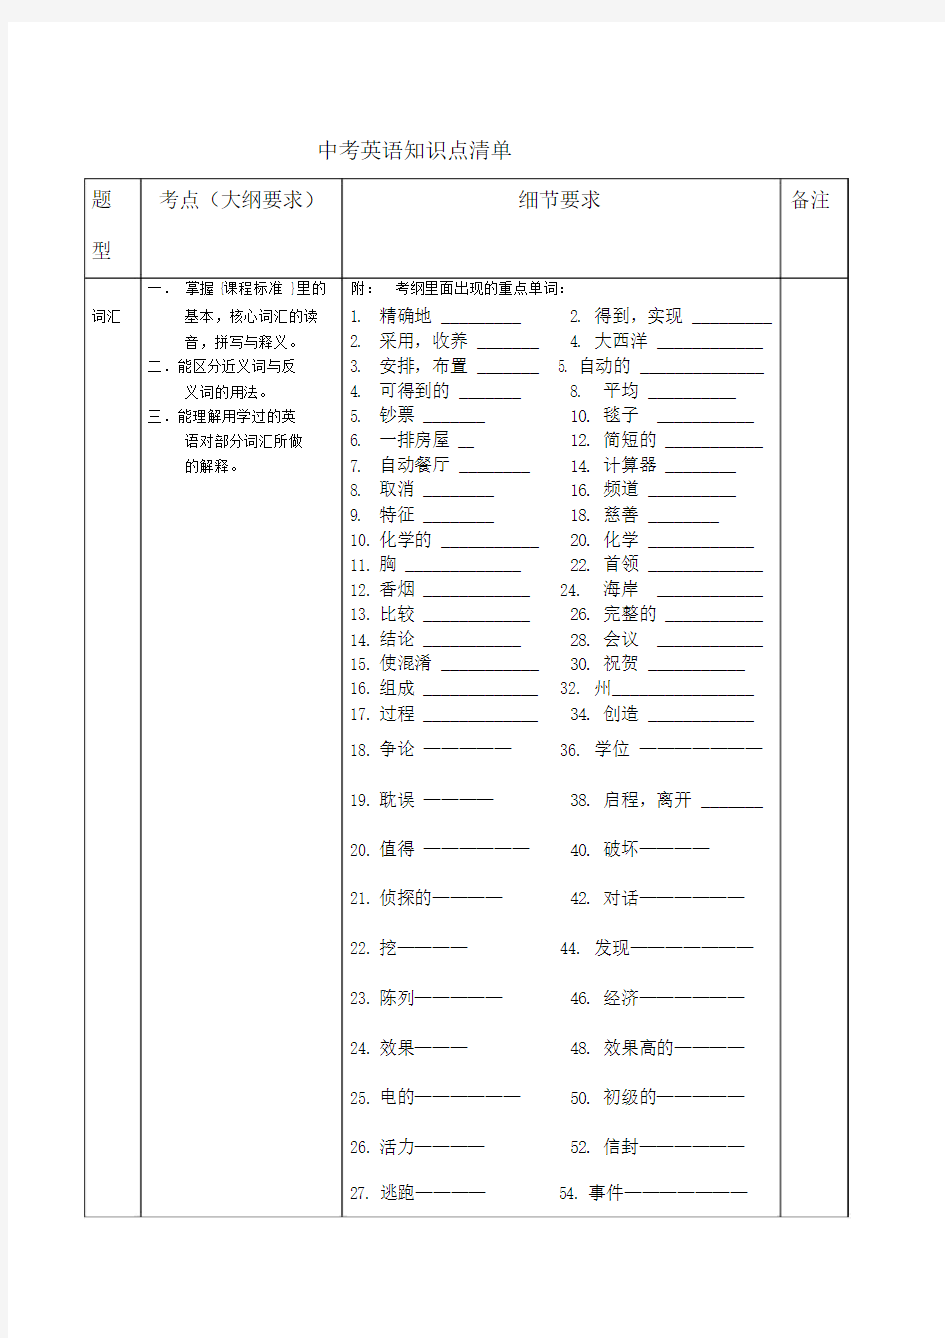 上海中考英语考纲要求与技巧